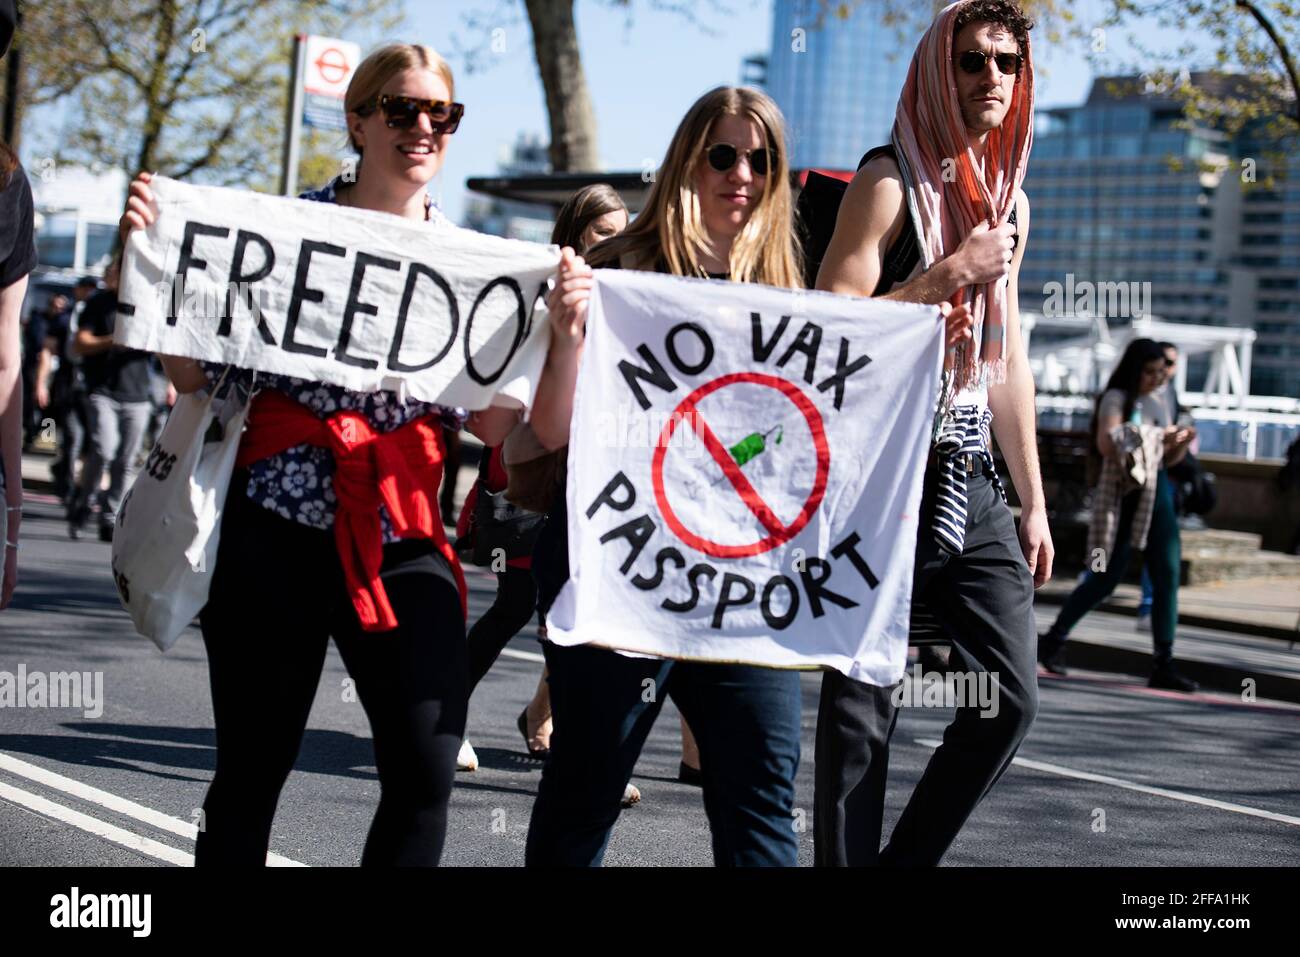 Londres, Royaume-Uni. 24 avril 2021. Manifestation "Unite for Freedom" contre les passeports pour vaccins détenus à Londres Credit: Loredana Sangiuliano/Alay Live News Banque D'Images